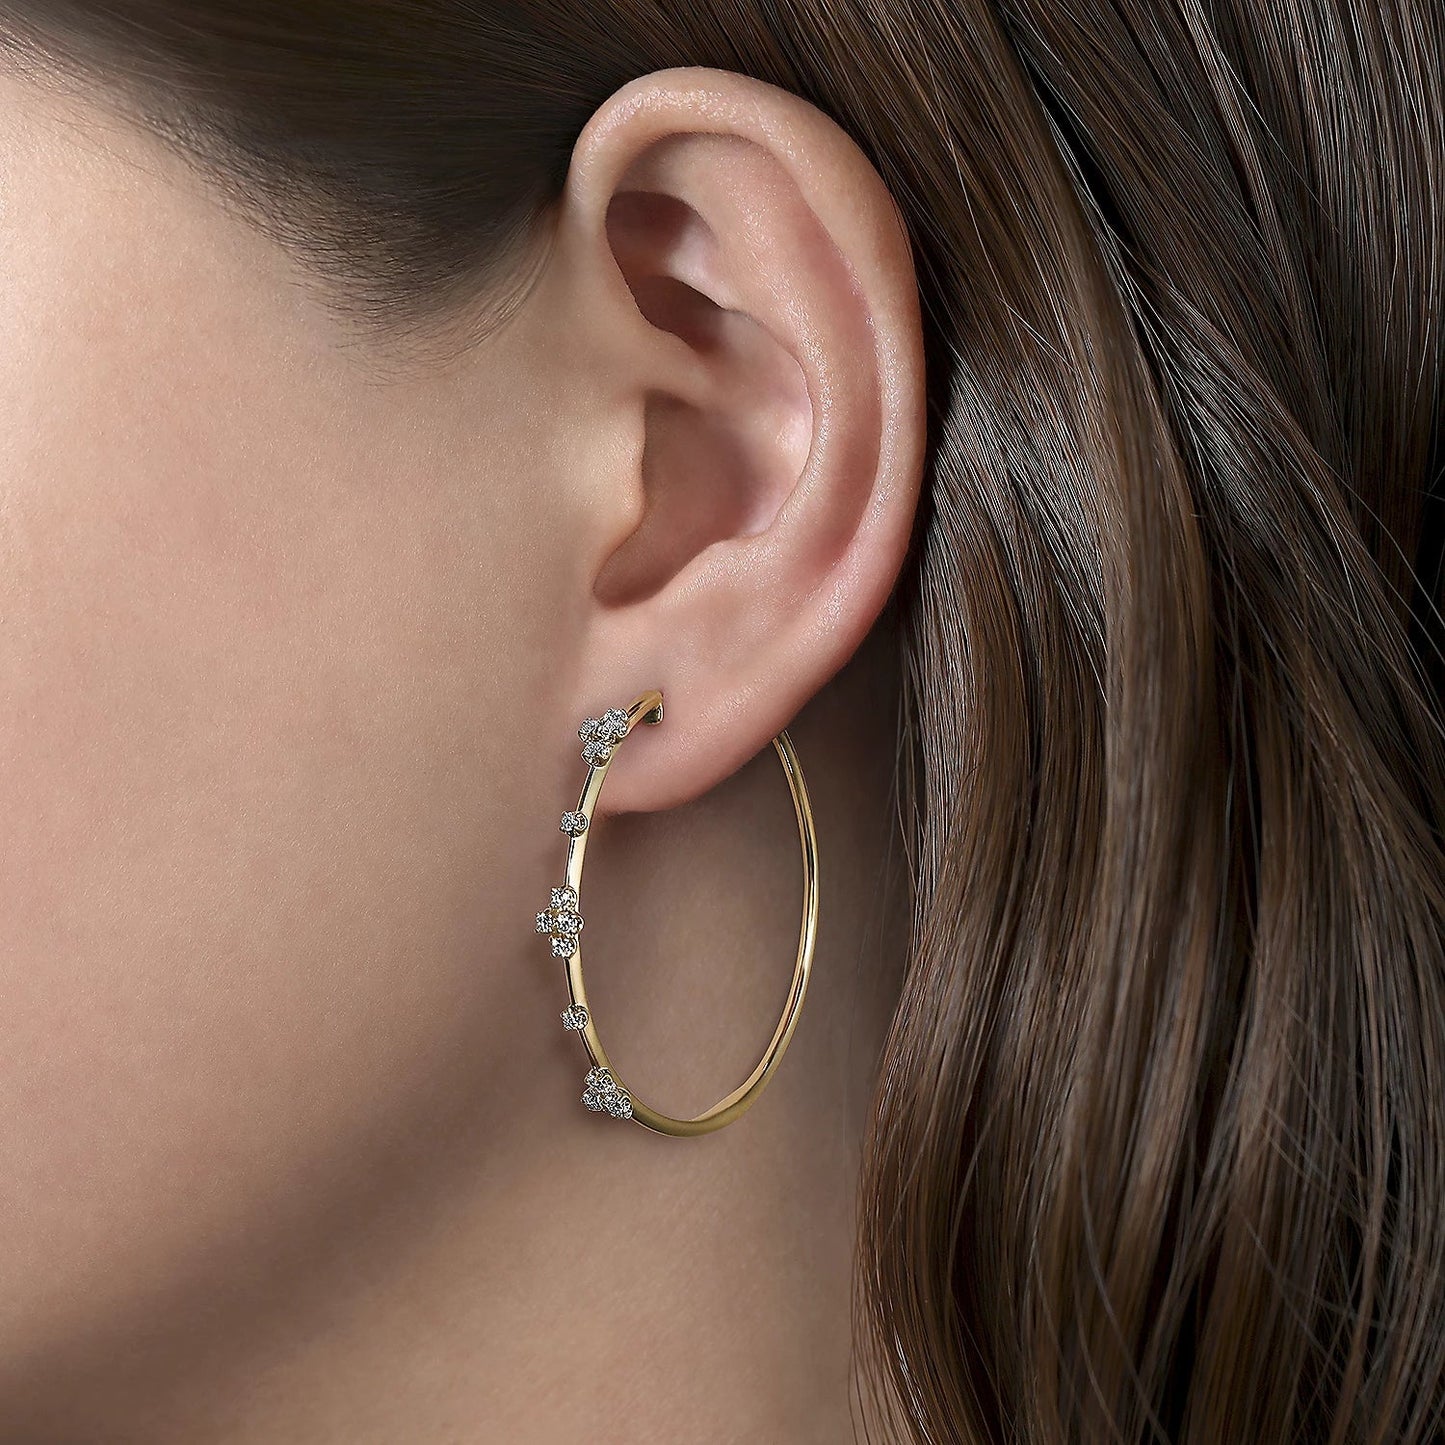 Earrings-14k yg diamond hoop 3 stations 40mm - Gaines Jewelers